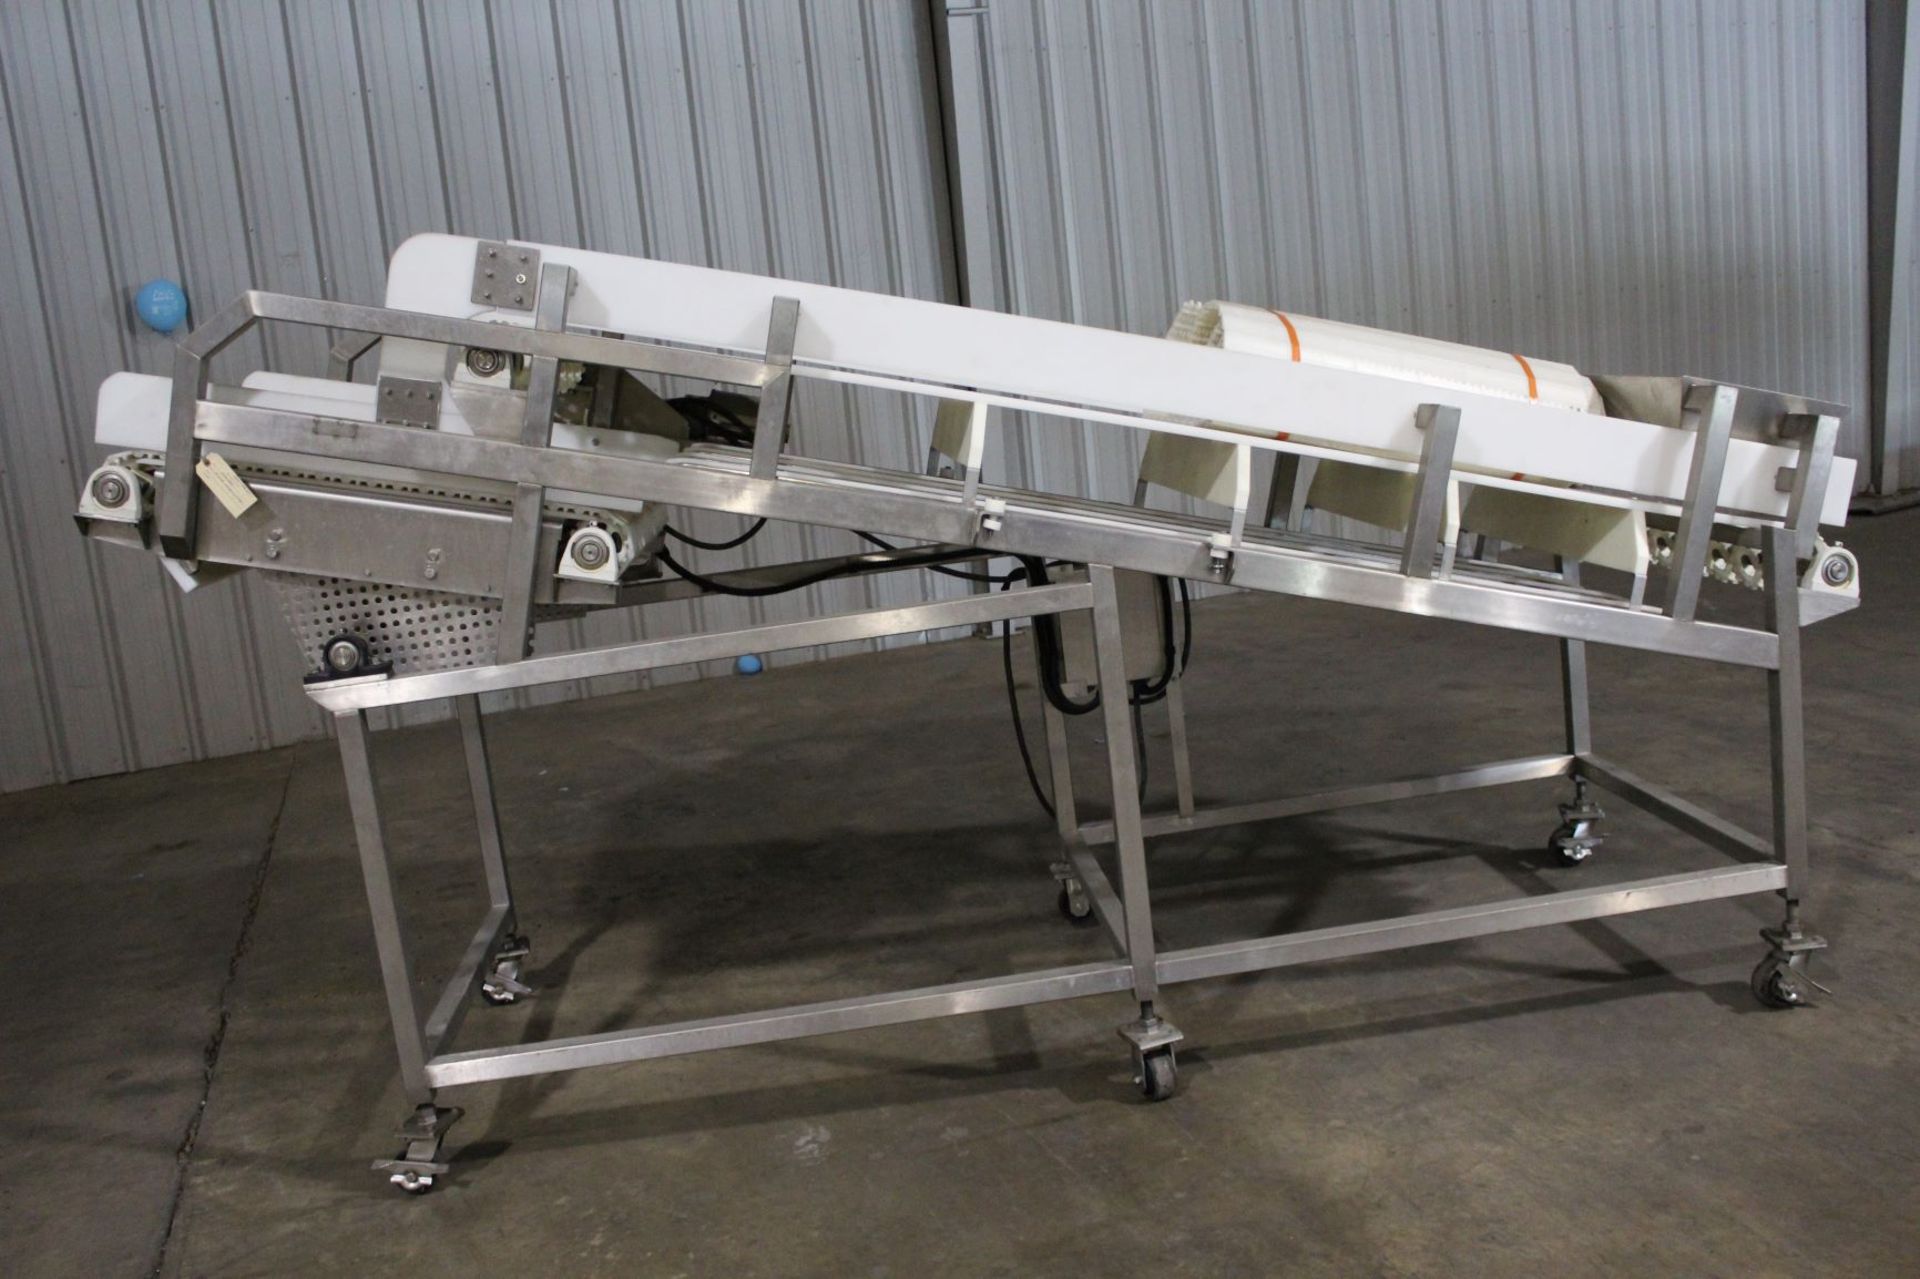 Frozen Block Conveyor, 34" wide x 140" long - Stamped 14052032